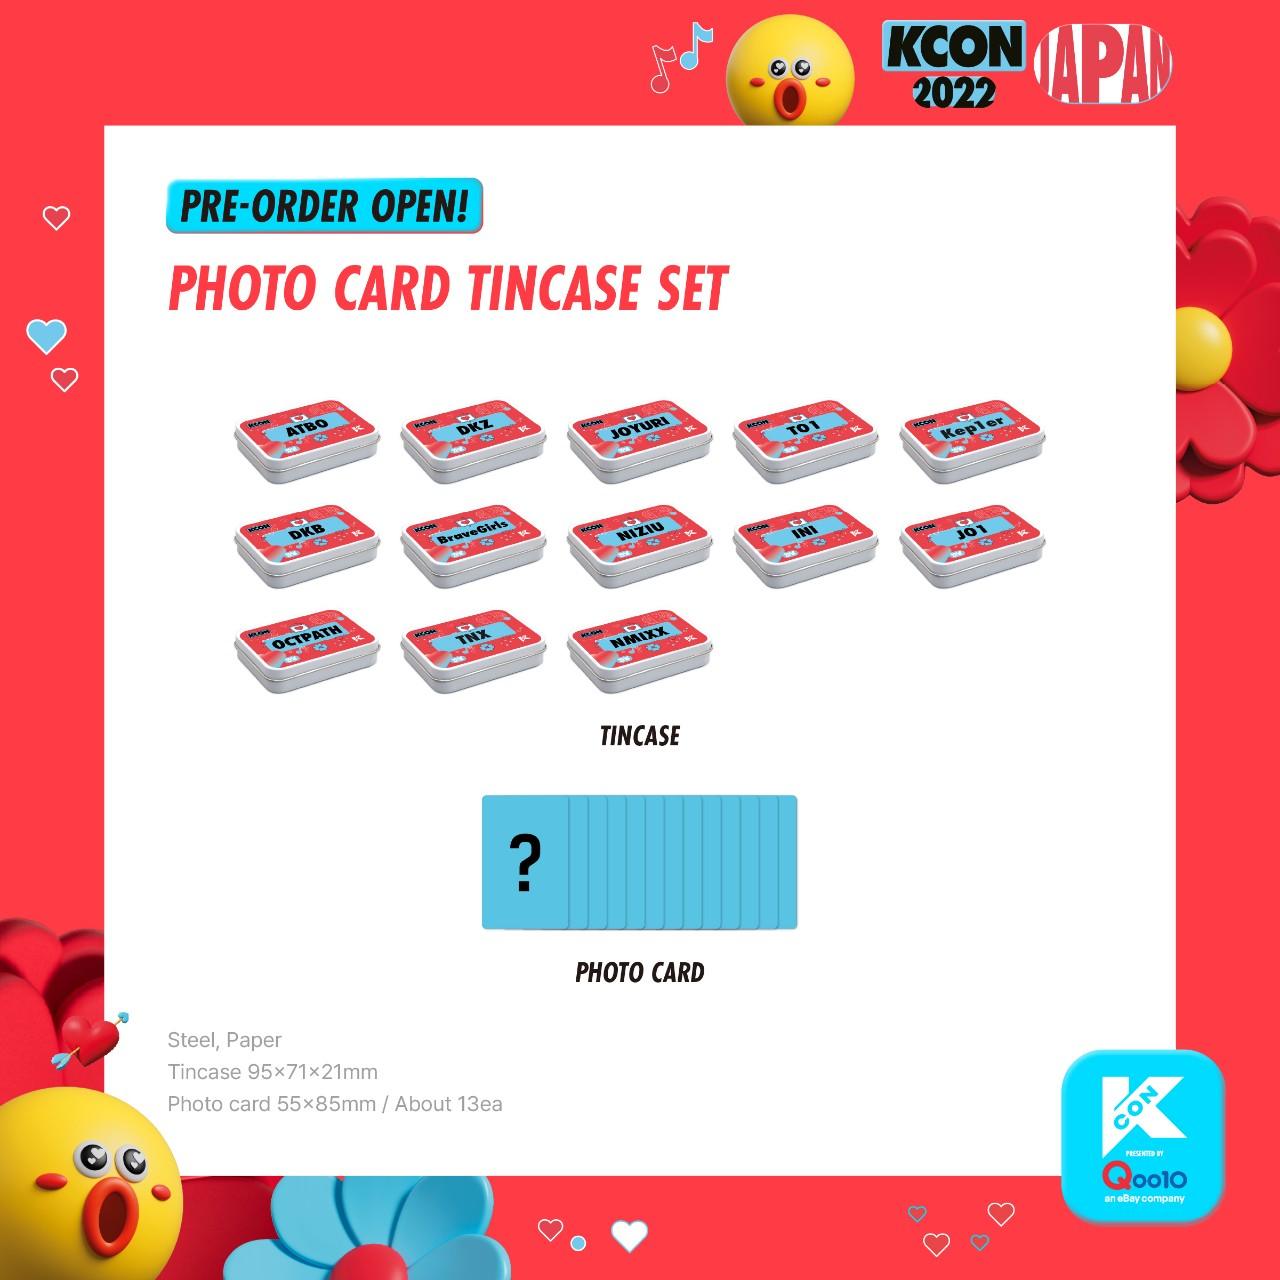 KCON PHOTOCARD TINCASE SET - KKANG